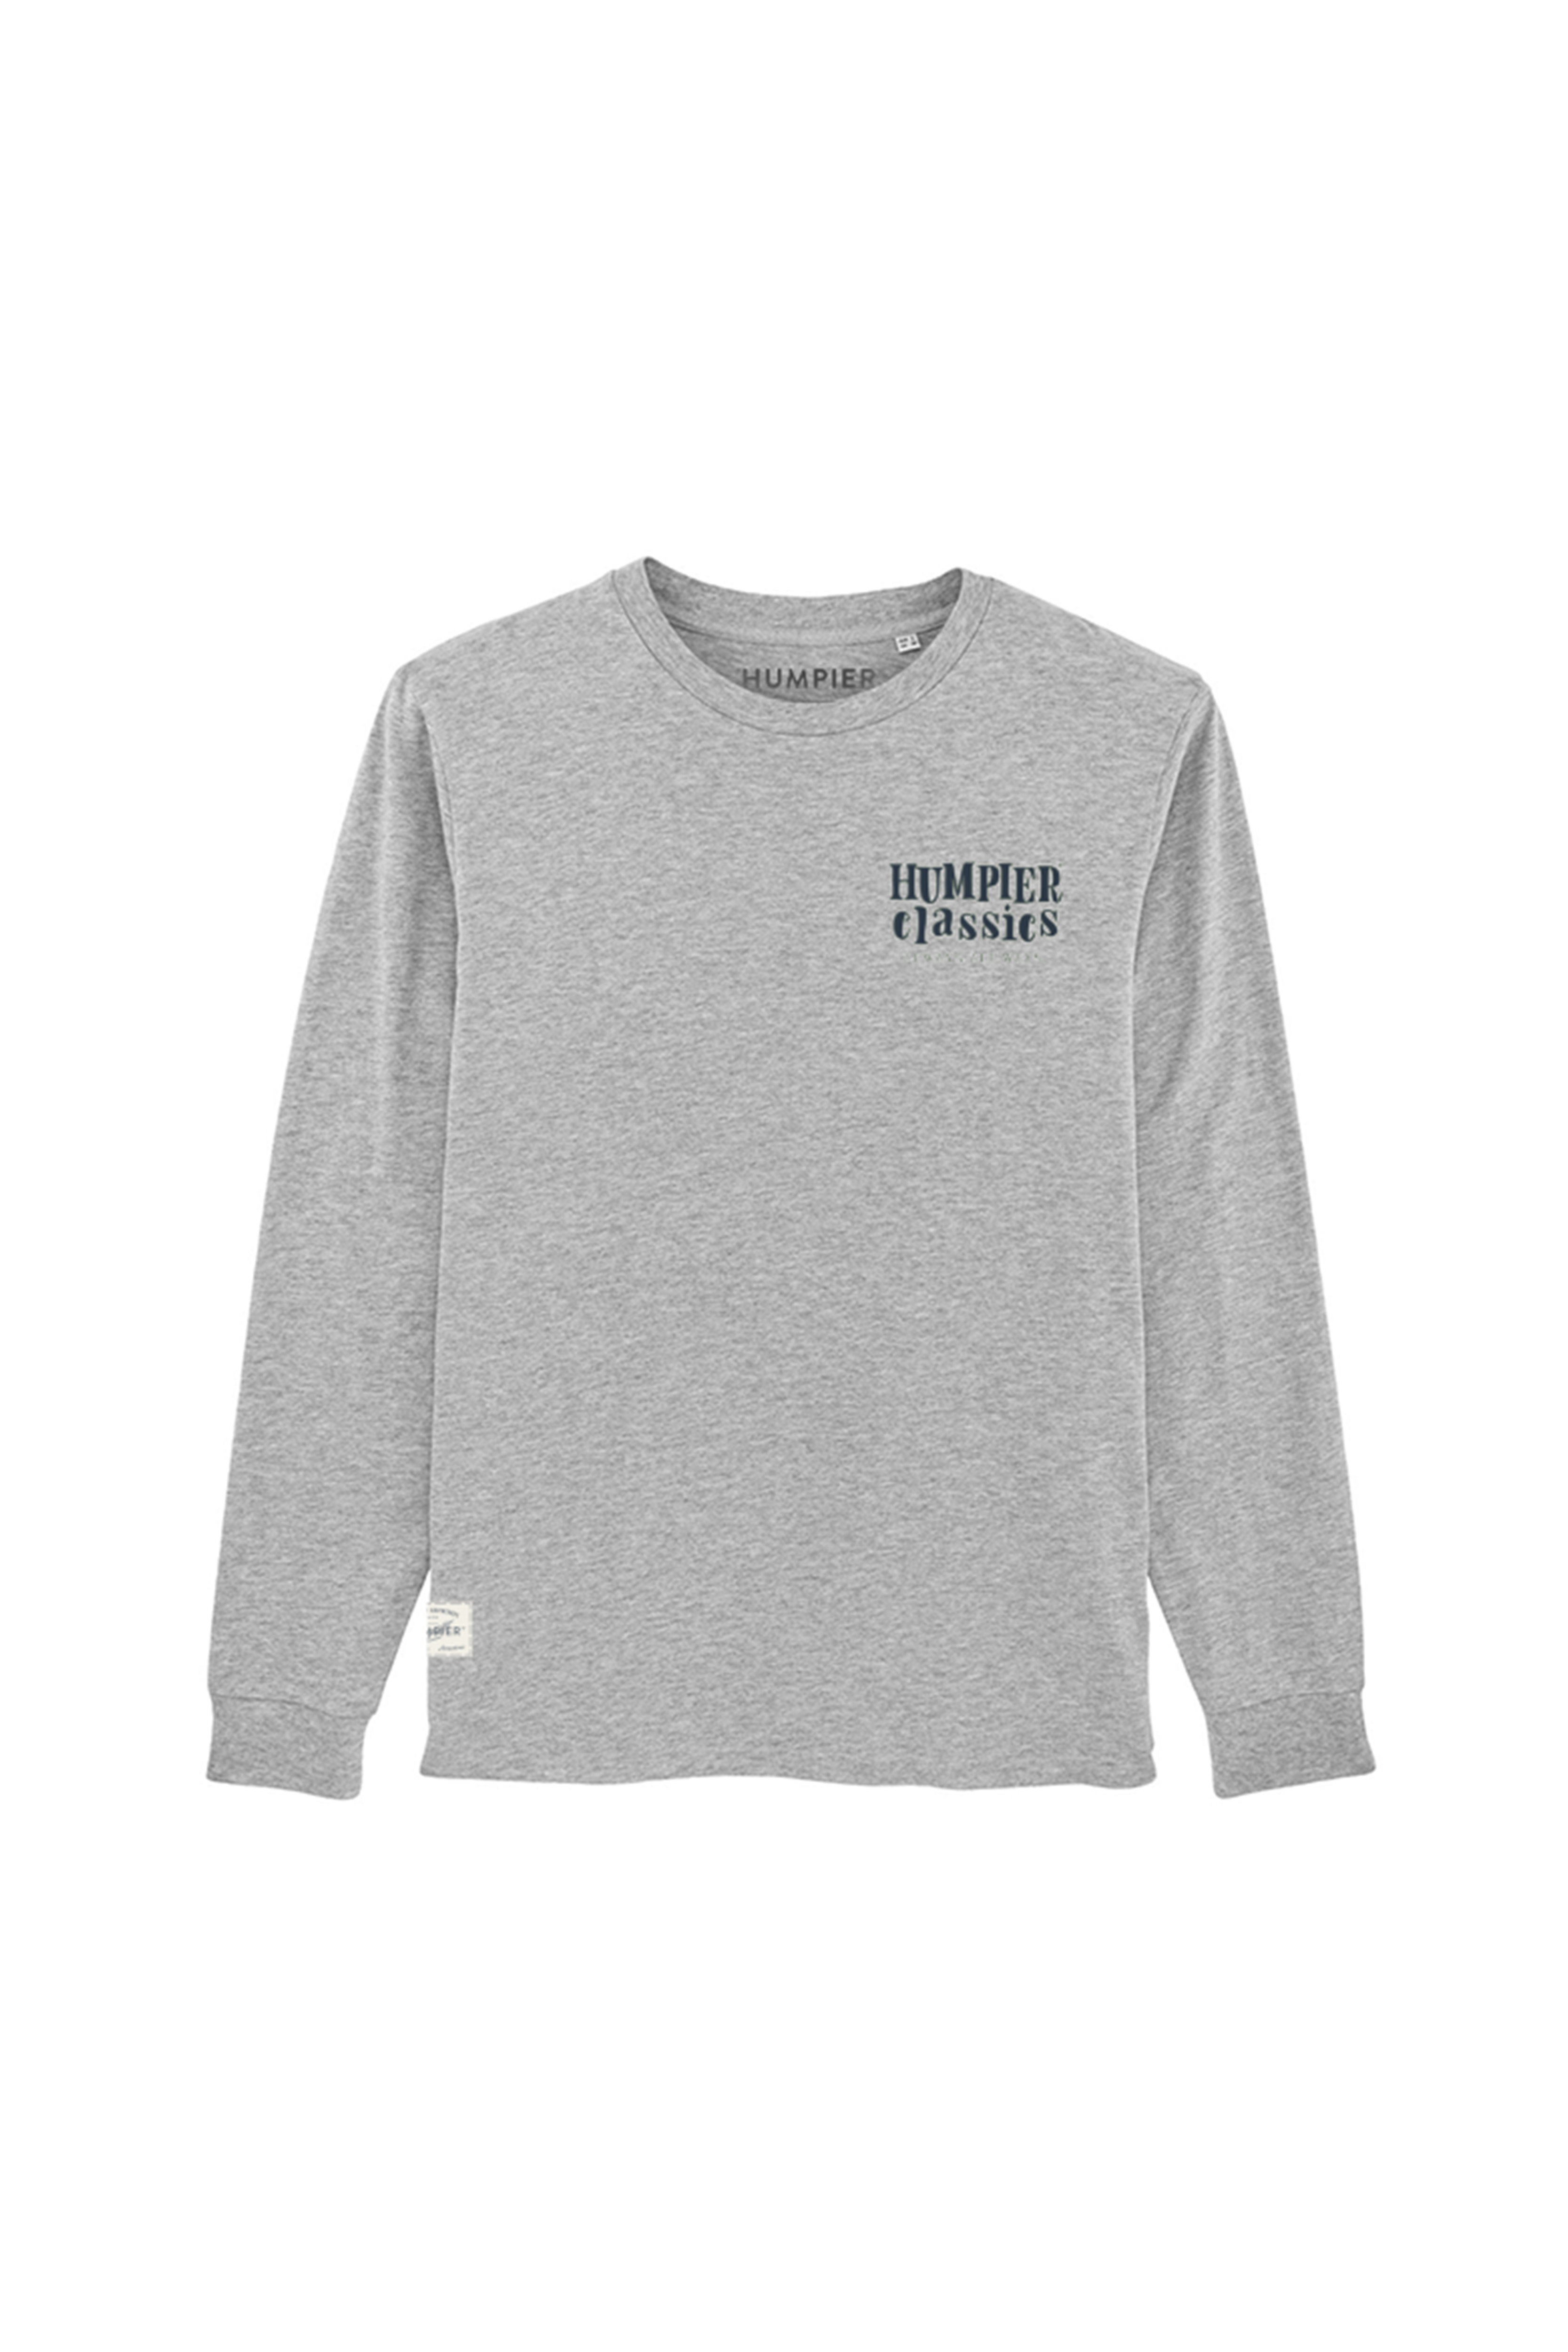 Camiseta manga larga Humpier classics gris